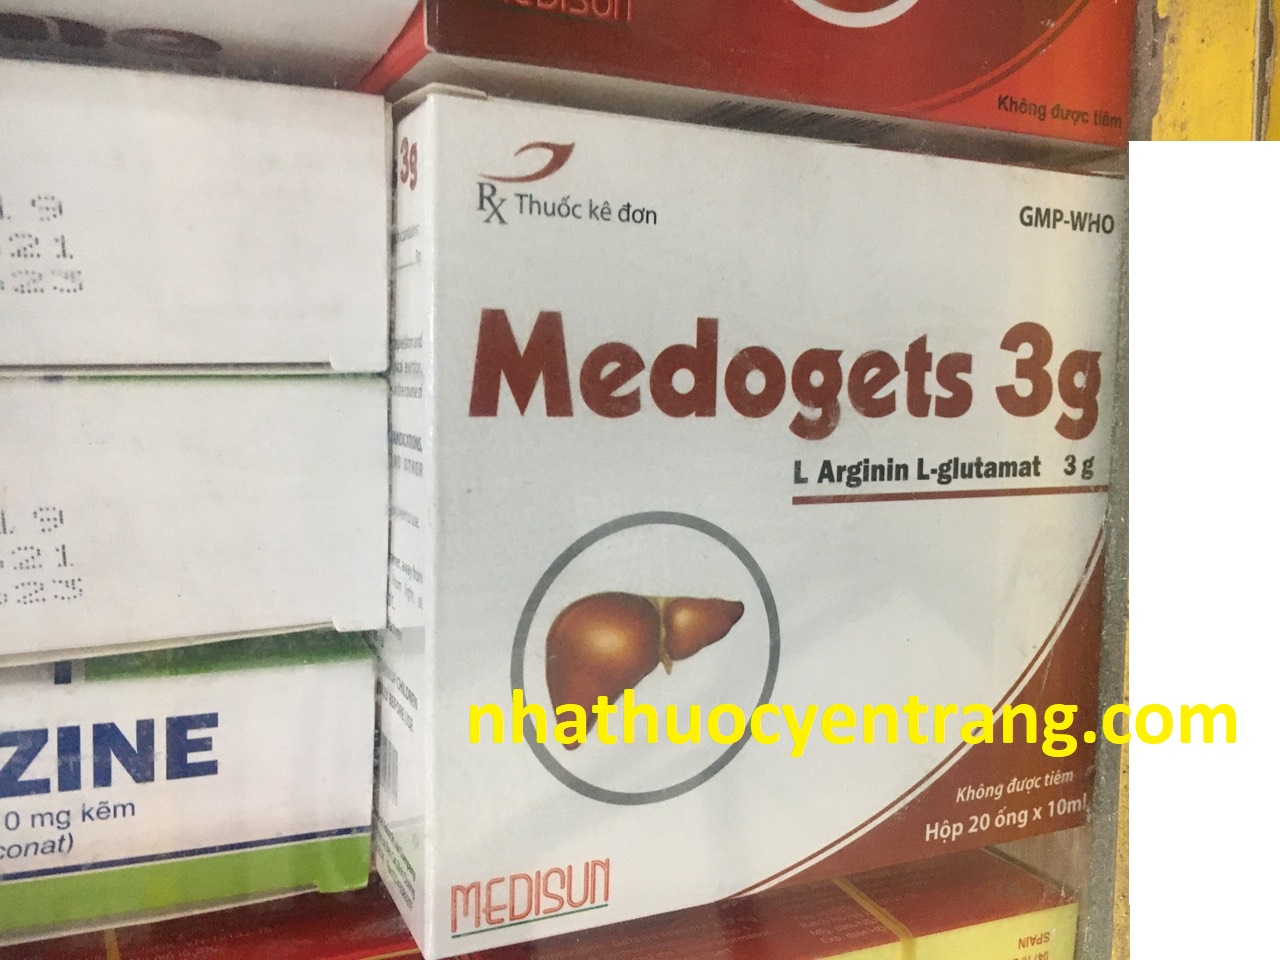 Medogets 3g